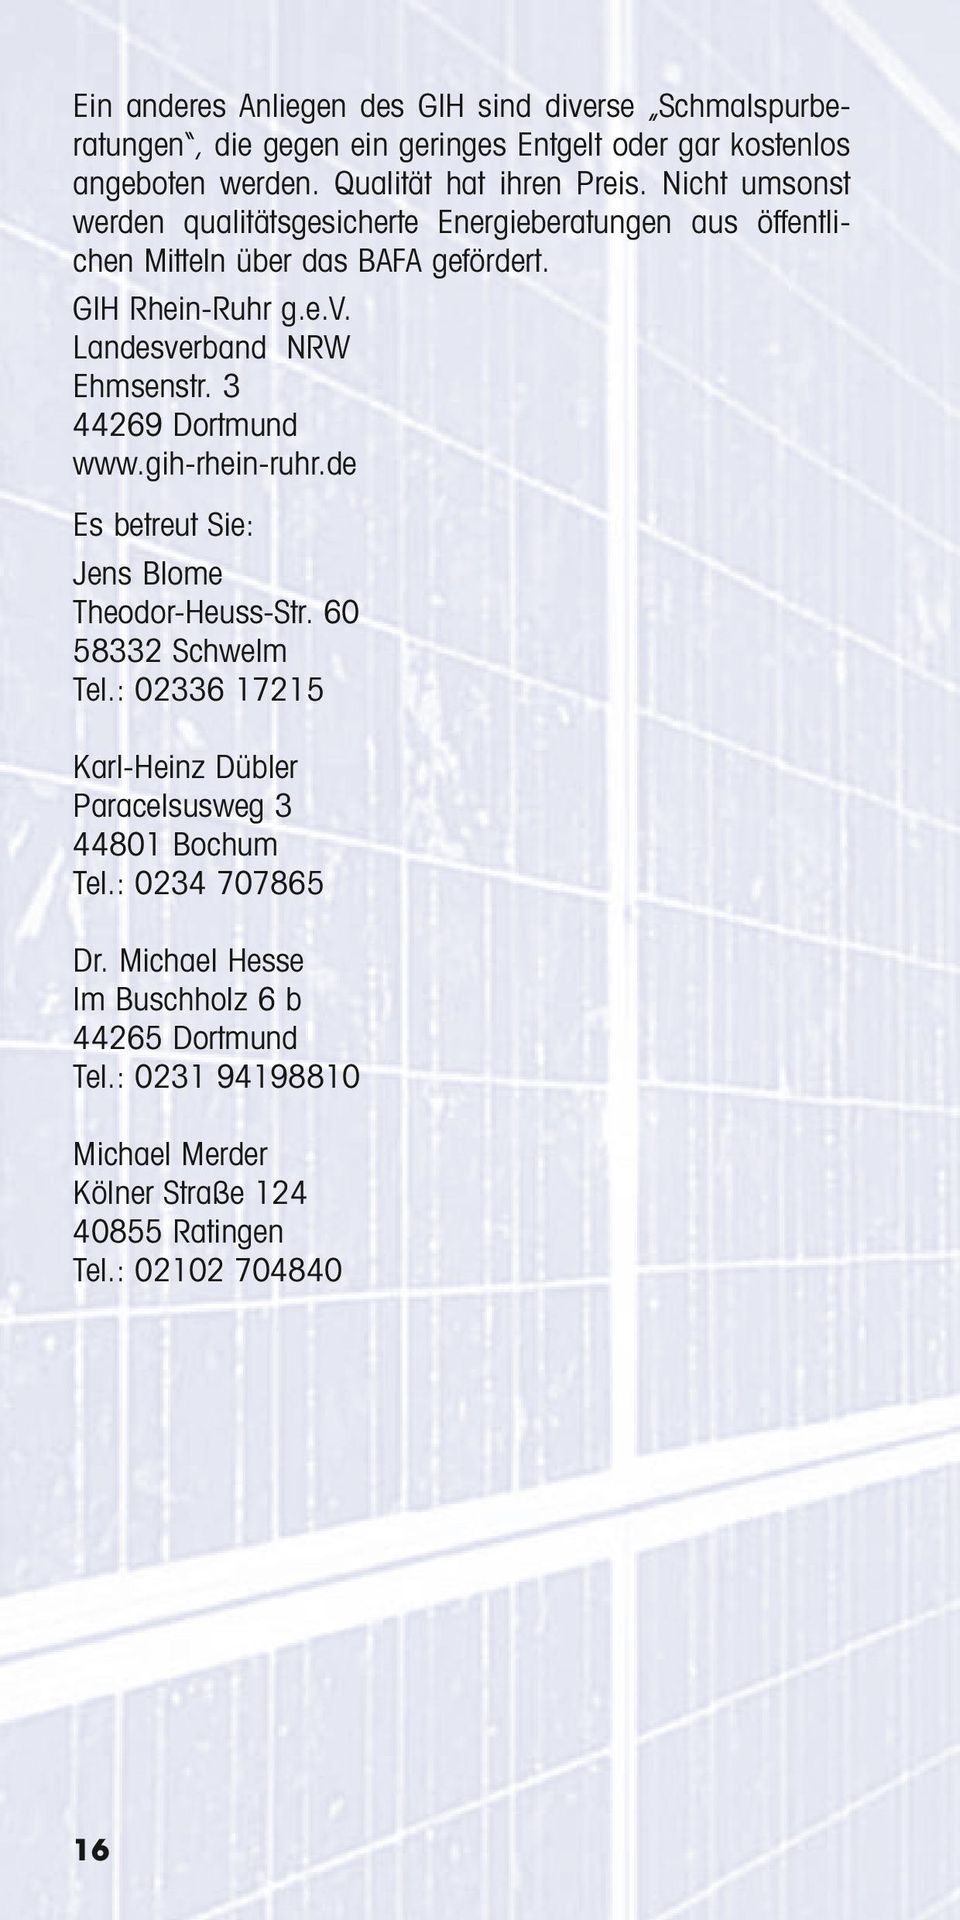 3 44269 Dortmund www.gih-rhein-ruhr.de Es betreut Sie: Jens Blome Theodor-Heuss-Str. 60 58332 Schwelm Tel.